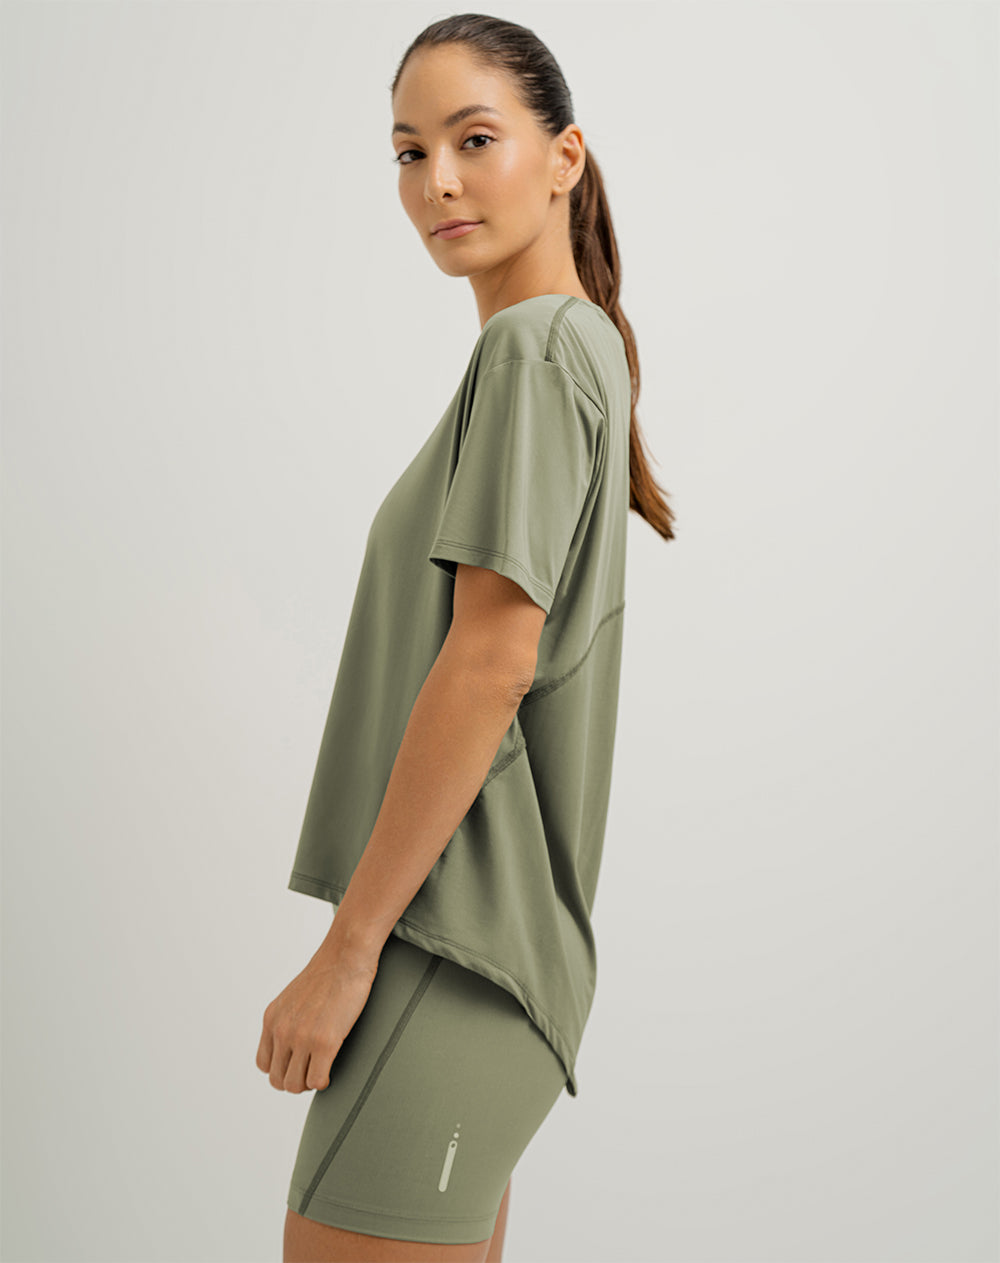 Camiseta kowi regular fit manga corta verde oliva